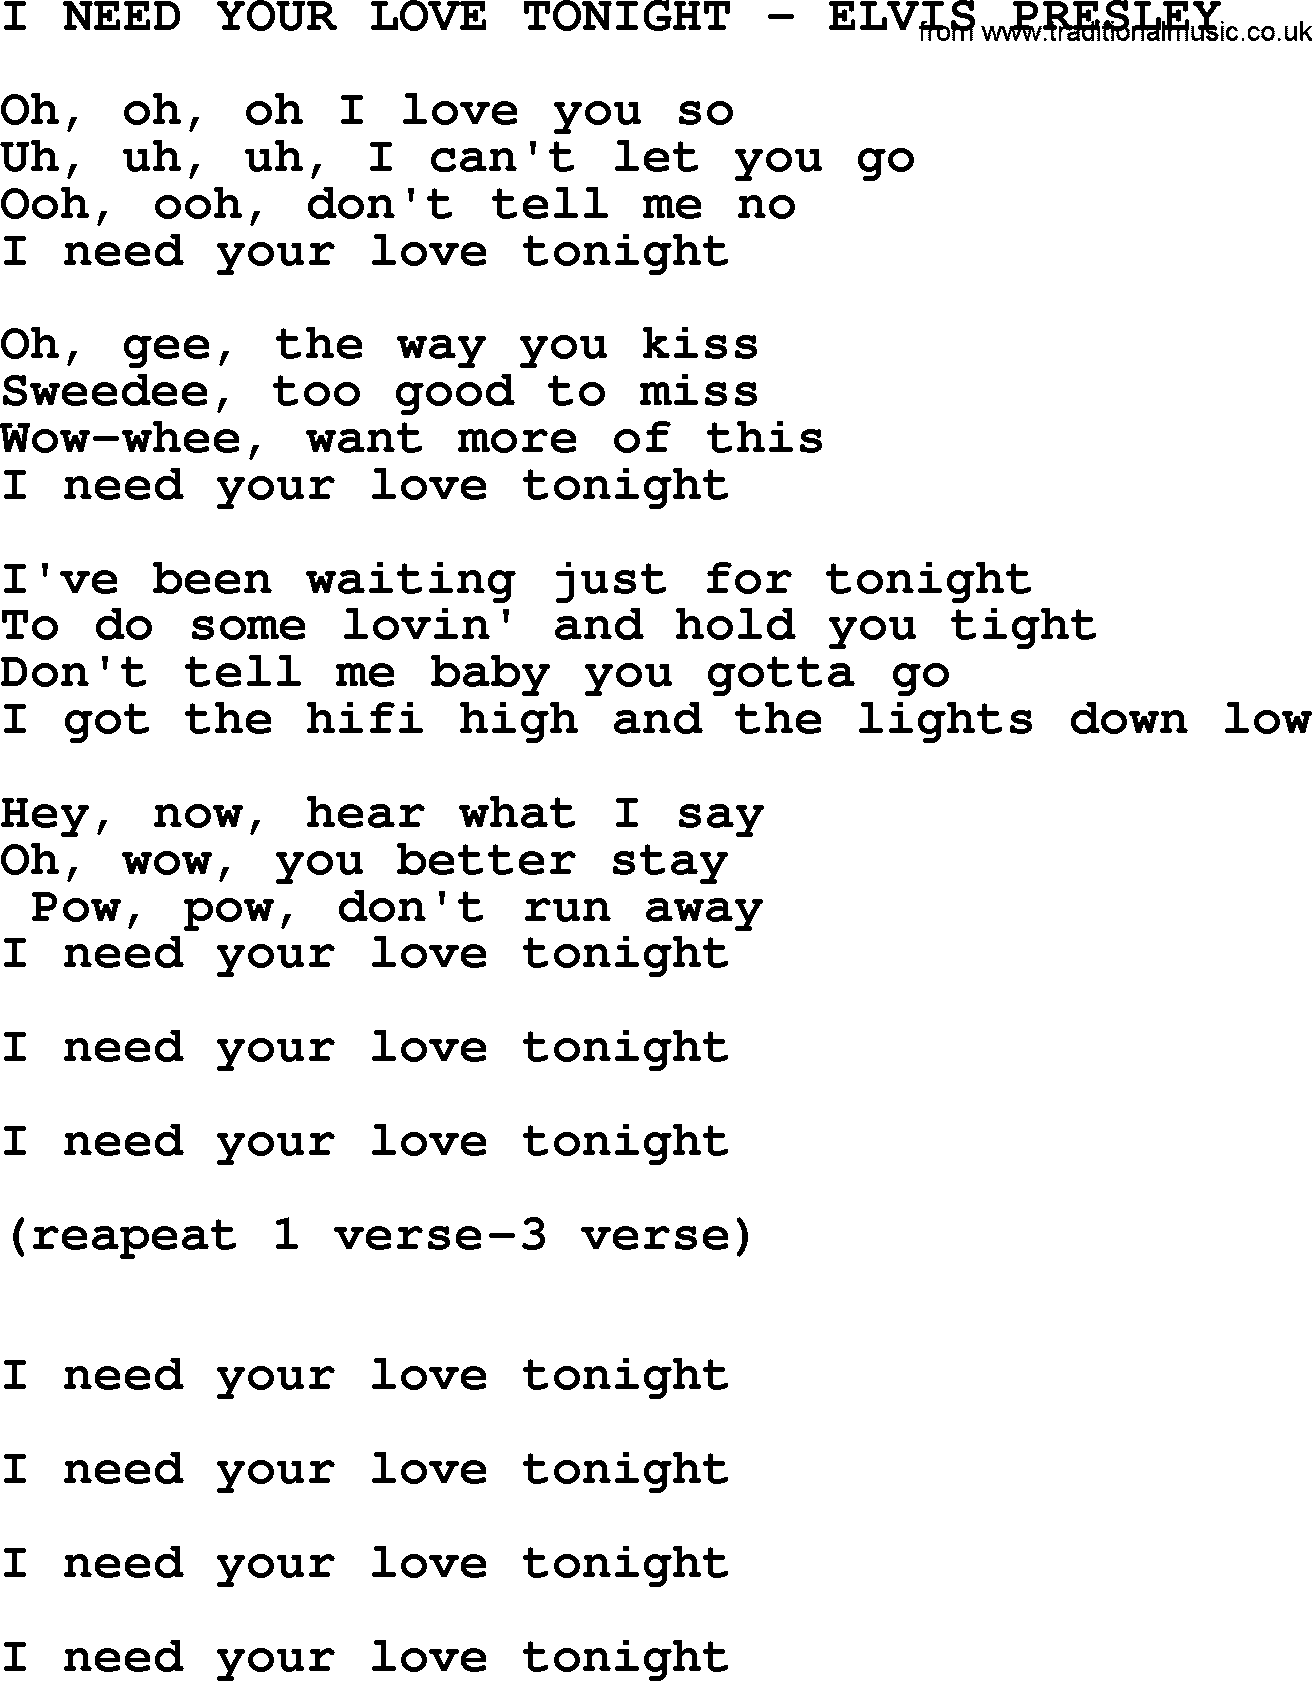 I'm Falling In Love Tonight Lyrics - Elvis Presley - Only on JioSaavn